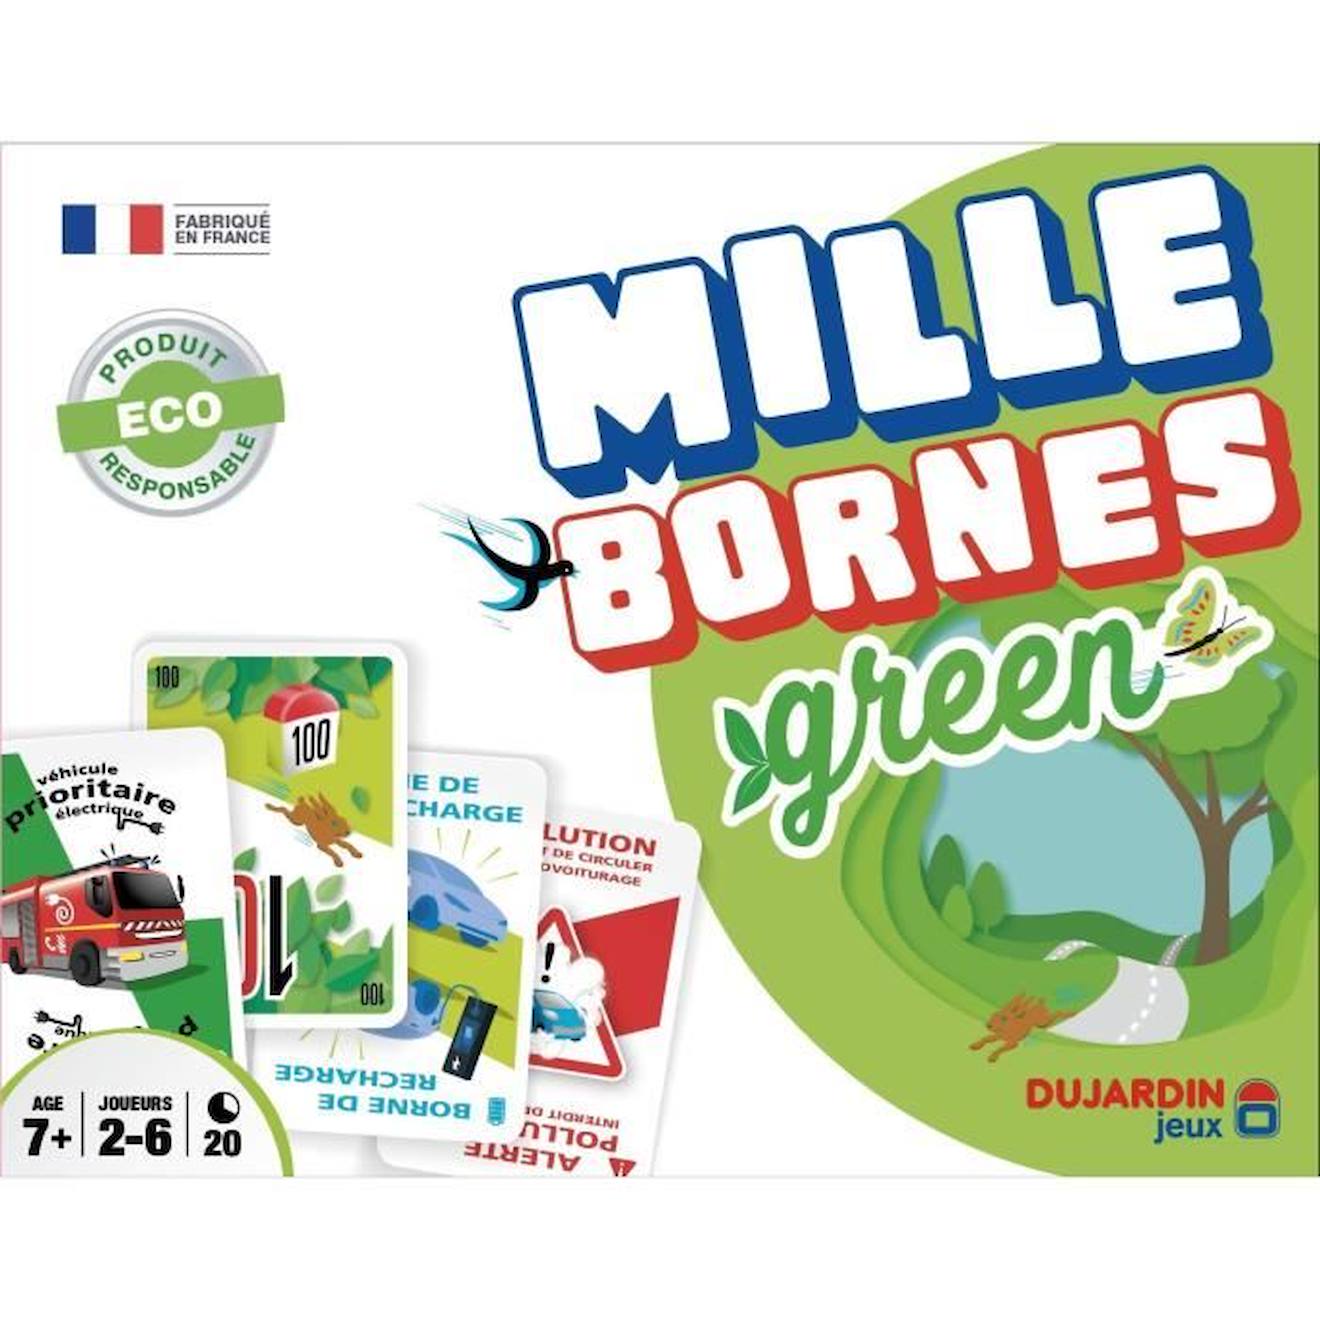 Mille Bornes Green - Jeu De Cartes - Dujardin - Parcourez Les Bornes En Voiture Électrique Dans Cett